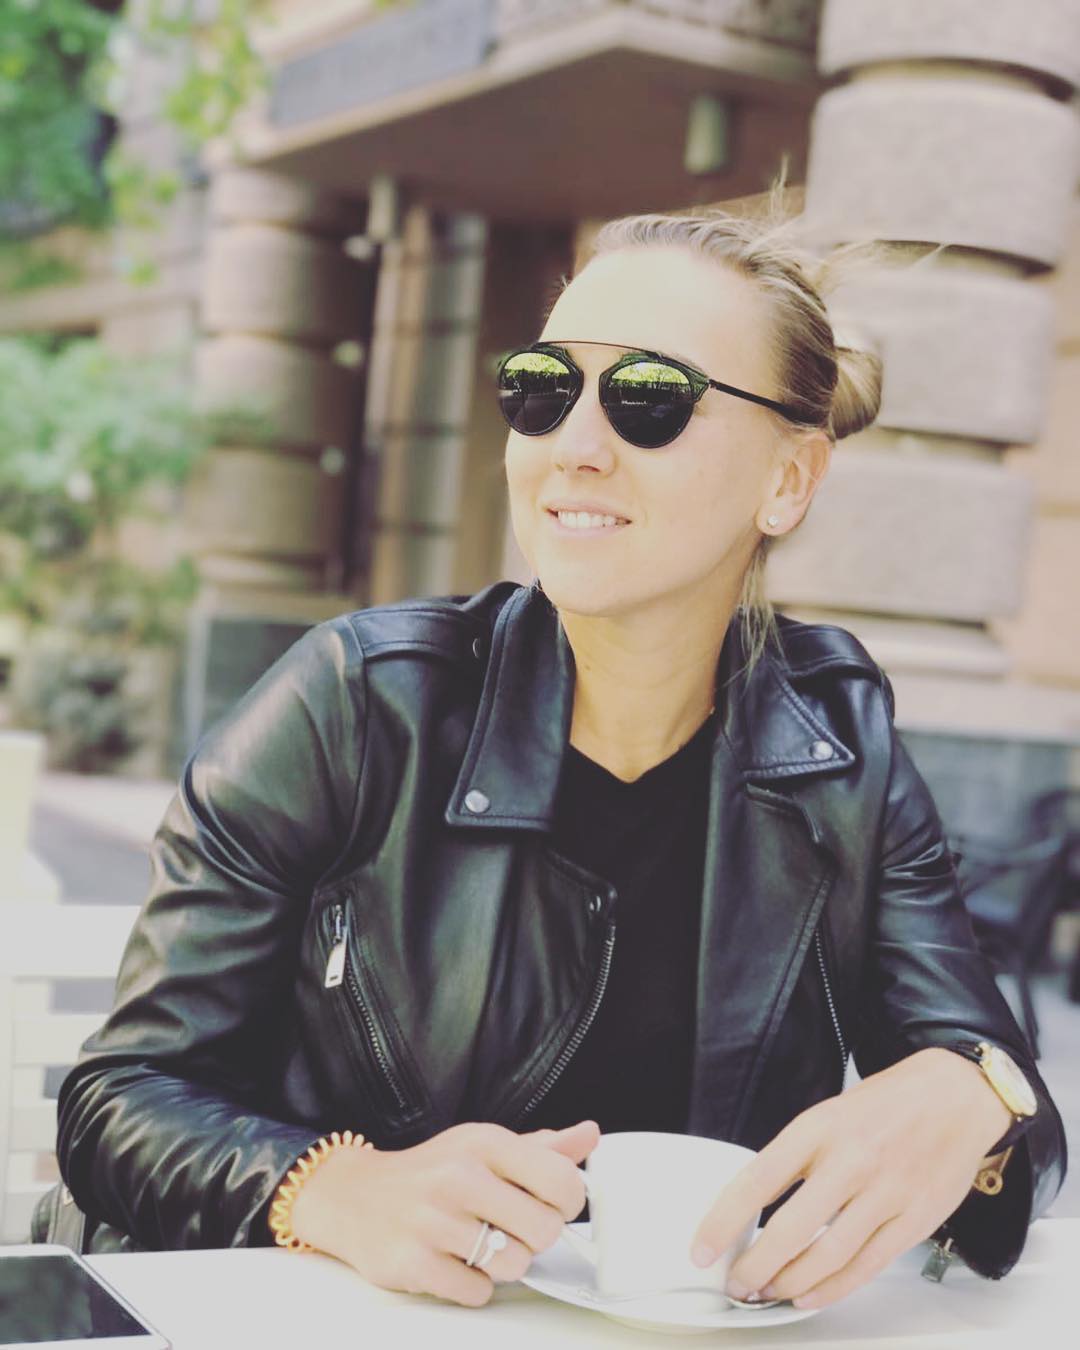 Елена Веснина сделала новую публикацию в Instagram